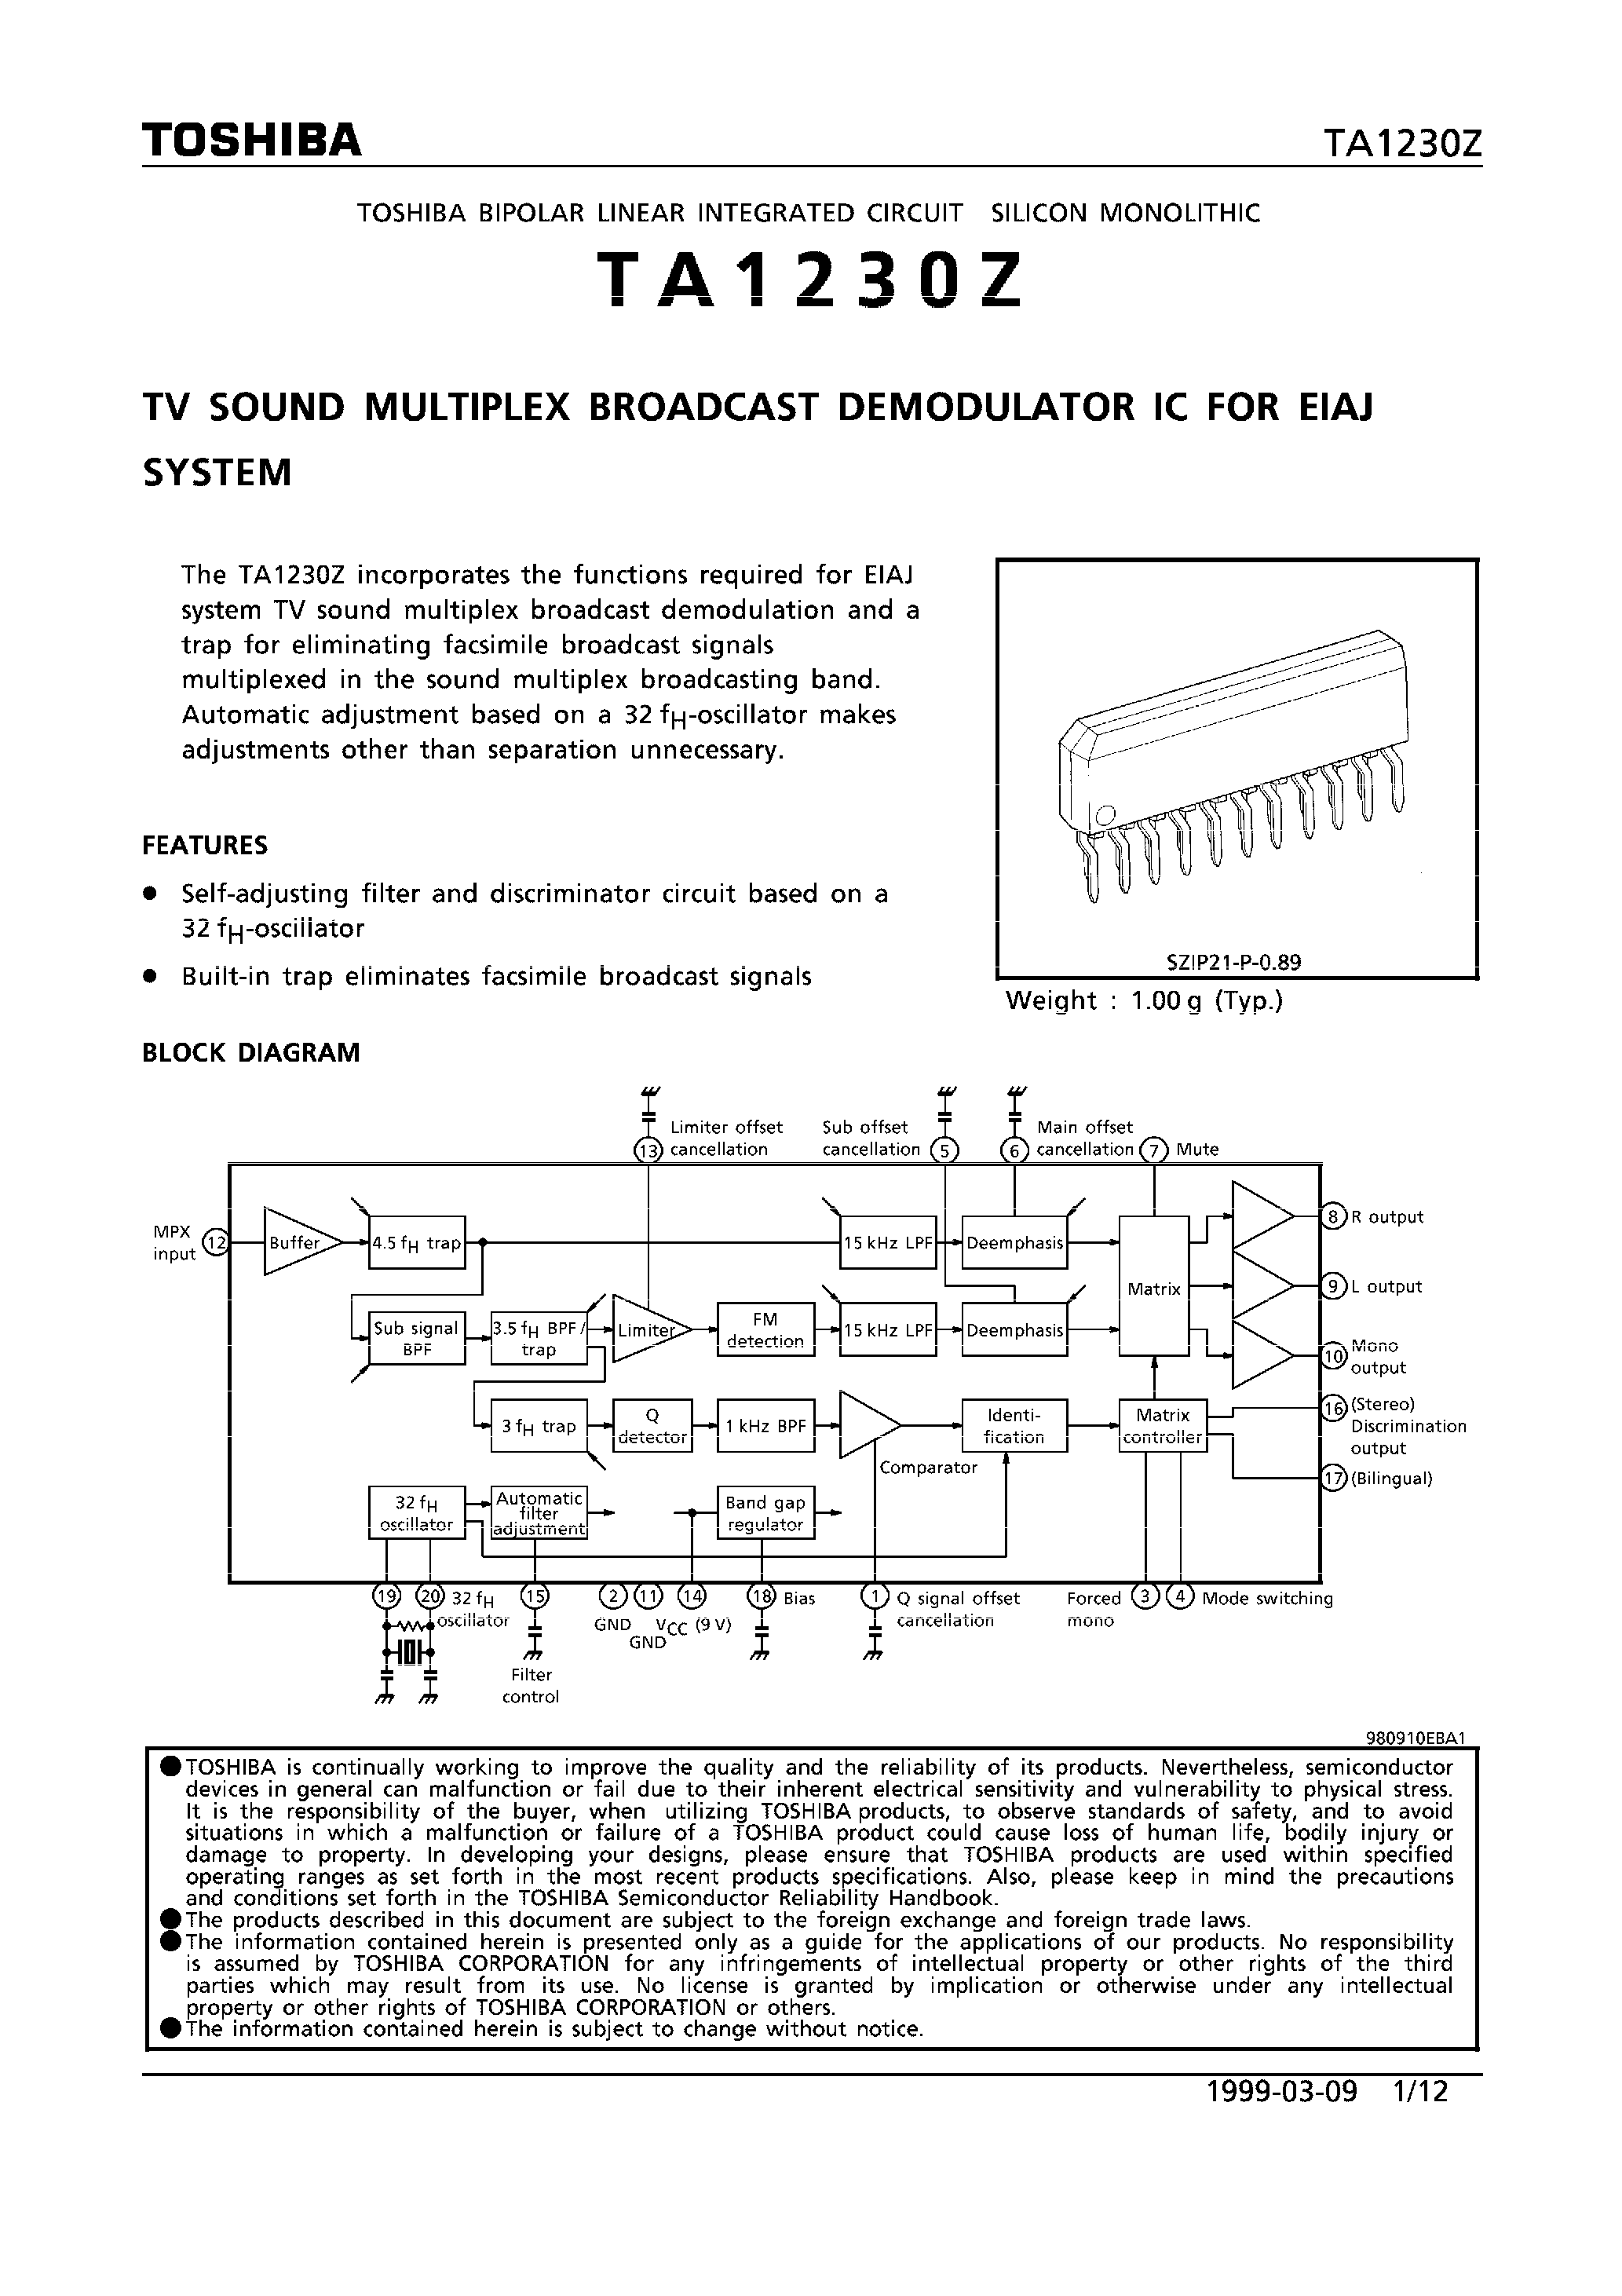 Datasheet TA1230Z - TV SOUND MULTIPLEX BROADCAST DEMODULATOR IC FOR EIAJ SYSTEM page 1